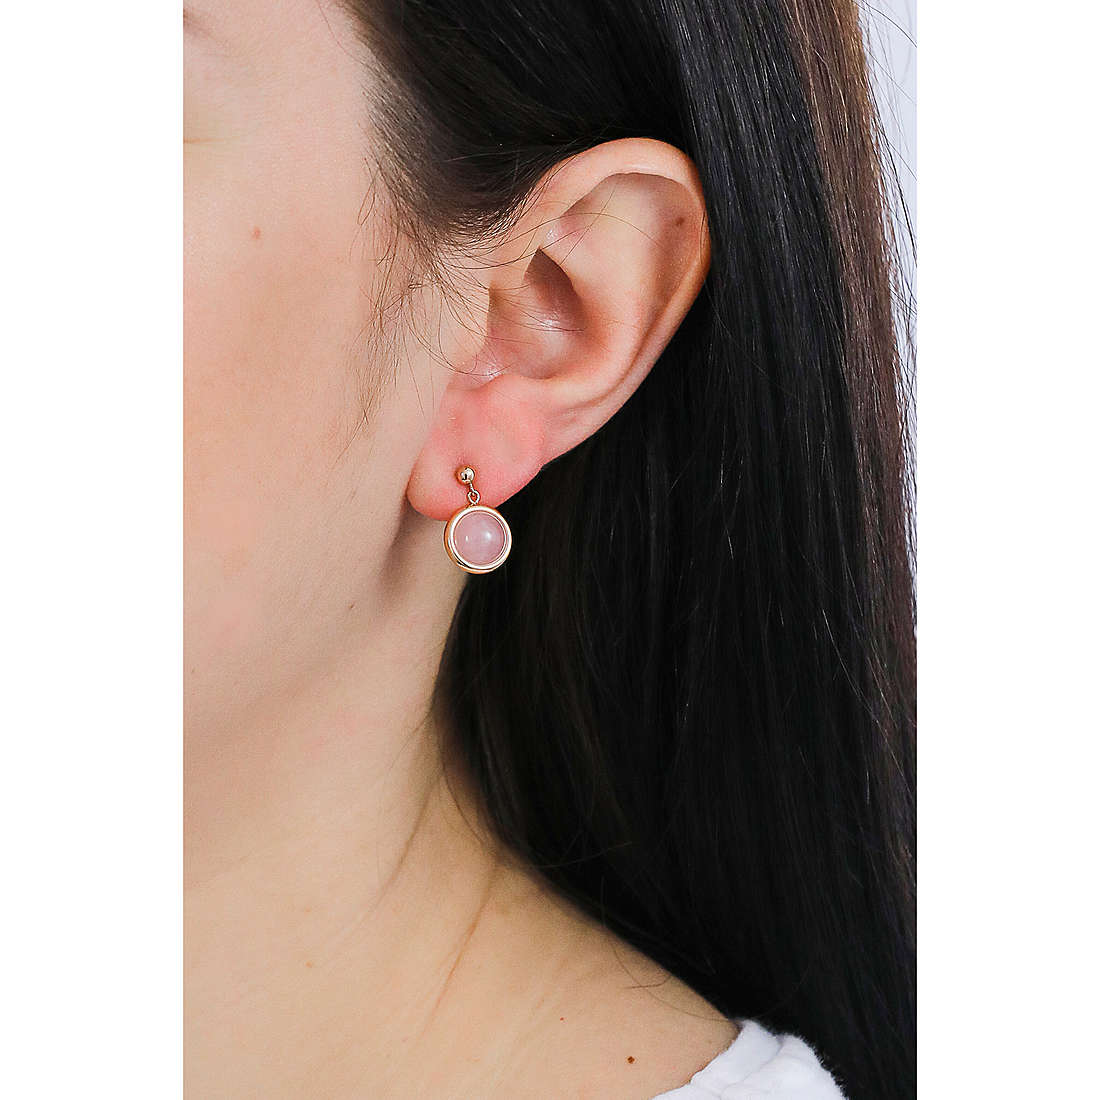 Fossil earrings Classics woman JF03672791 wearing